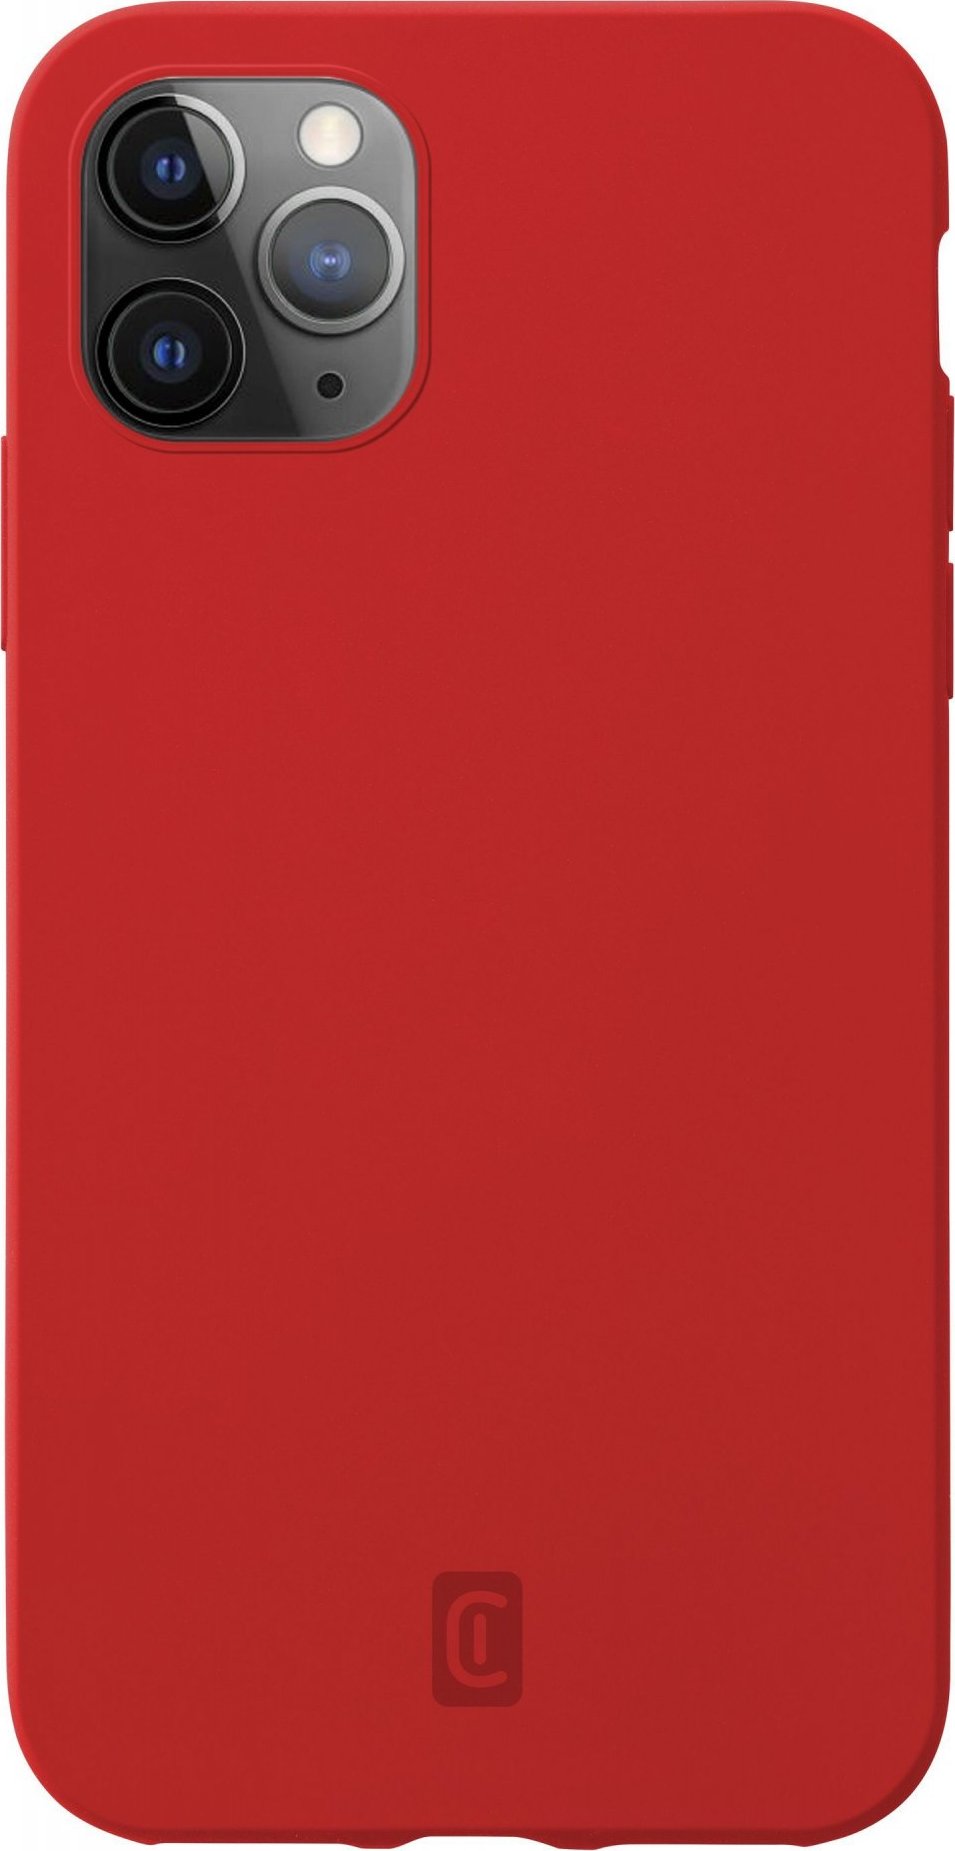 Ochranný silikonový kryt Cellularline Sensation pro Apple iPhone 12 Pro Max, červený